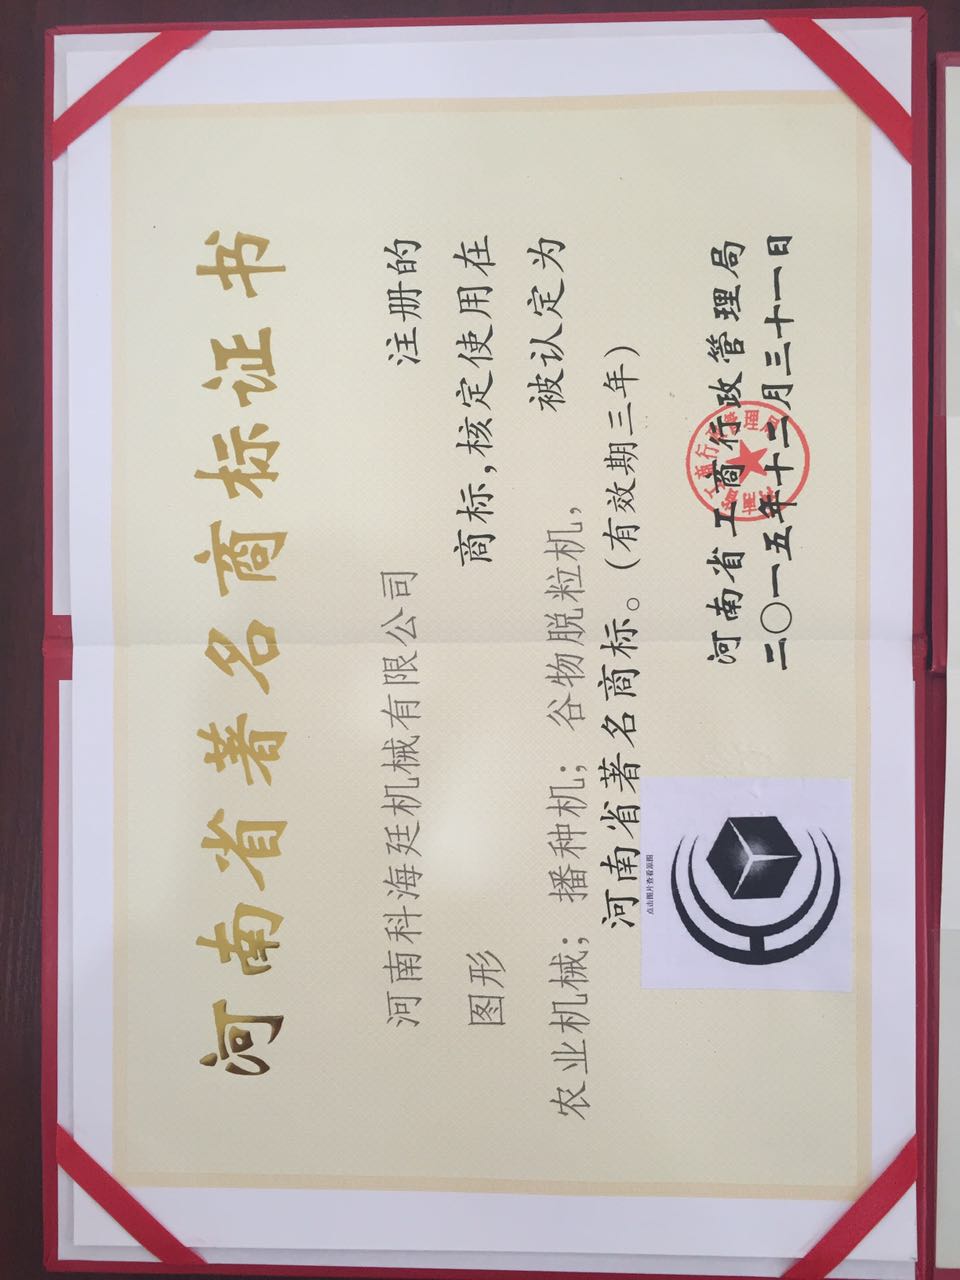 熱烈祝賀河南科海廷機械有限公司榮獲“河南省著名商標”